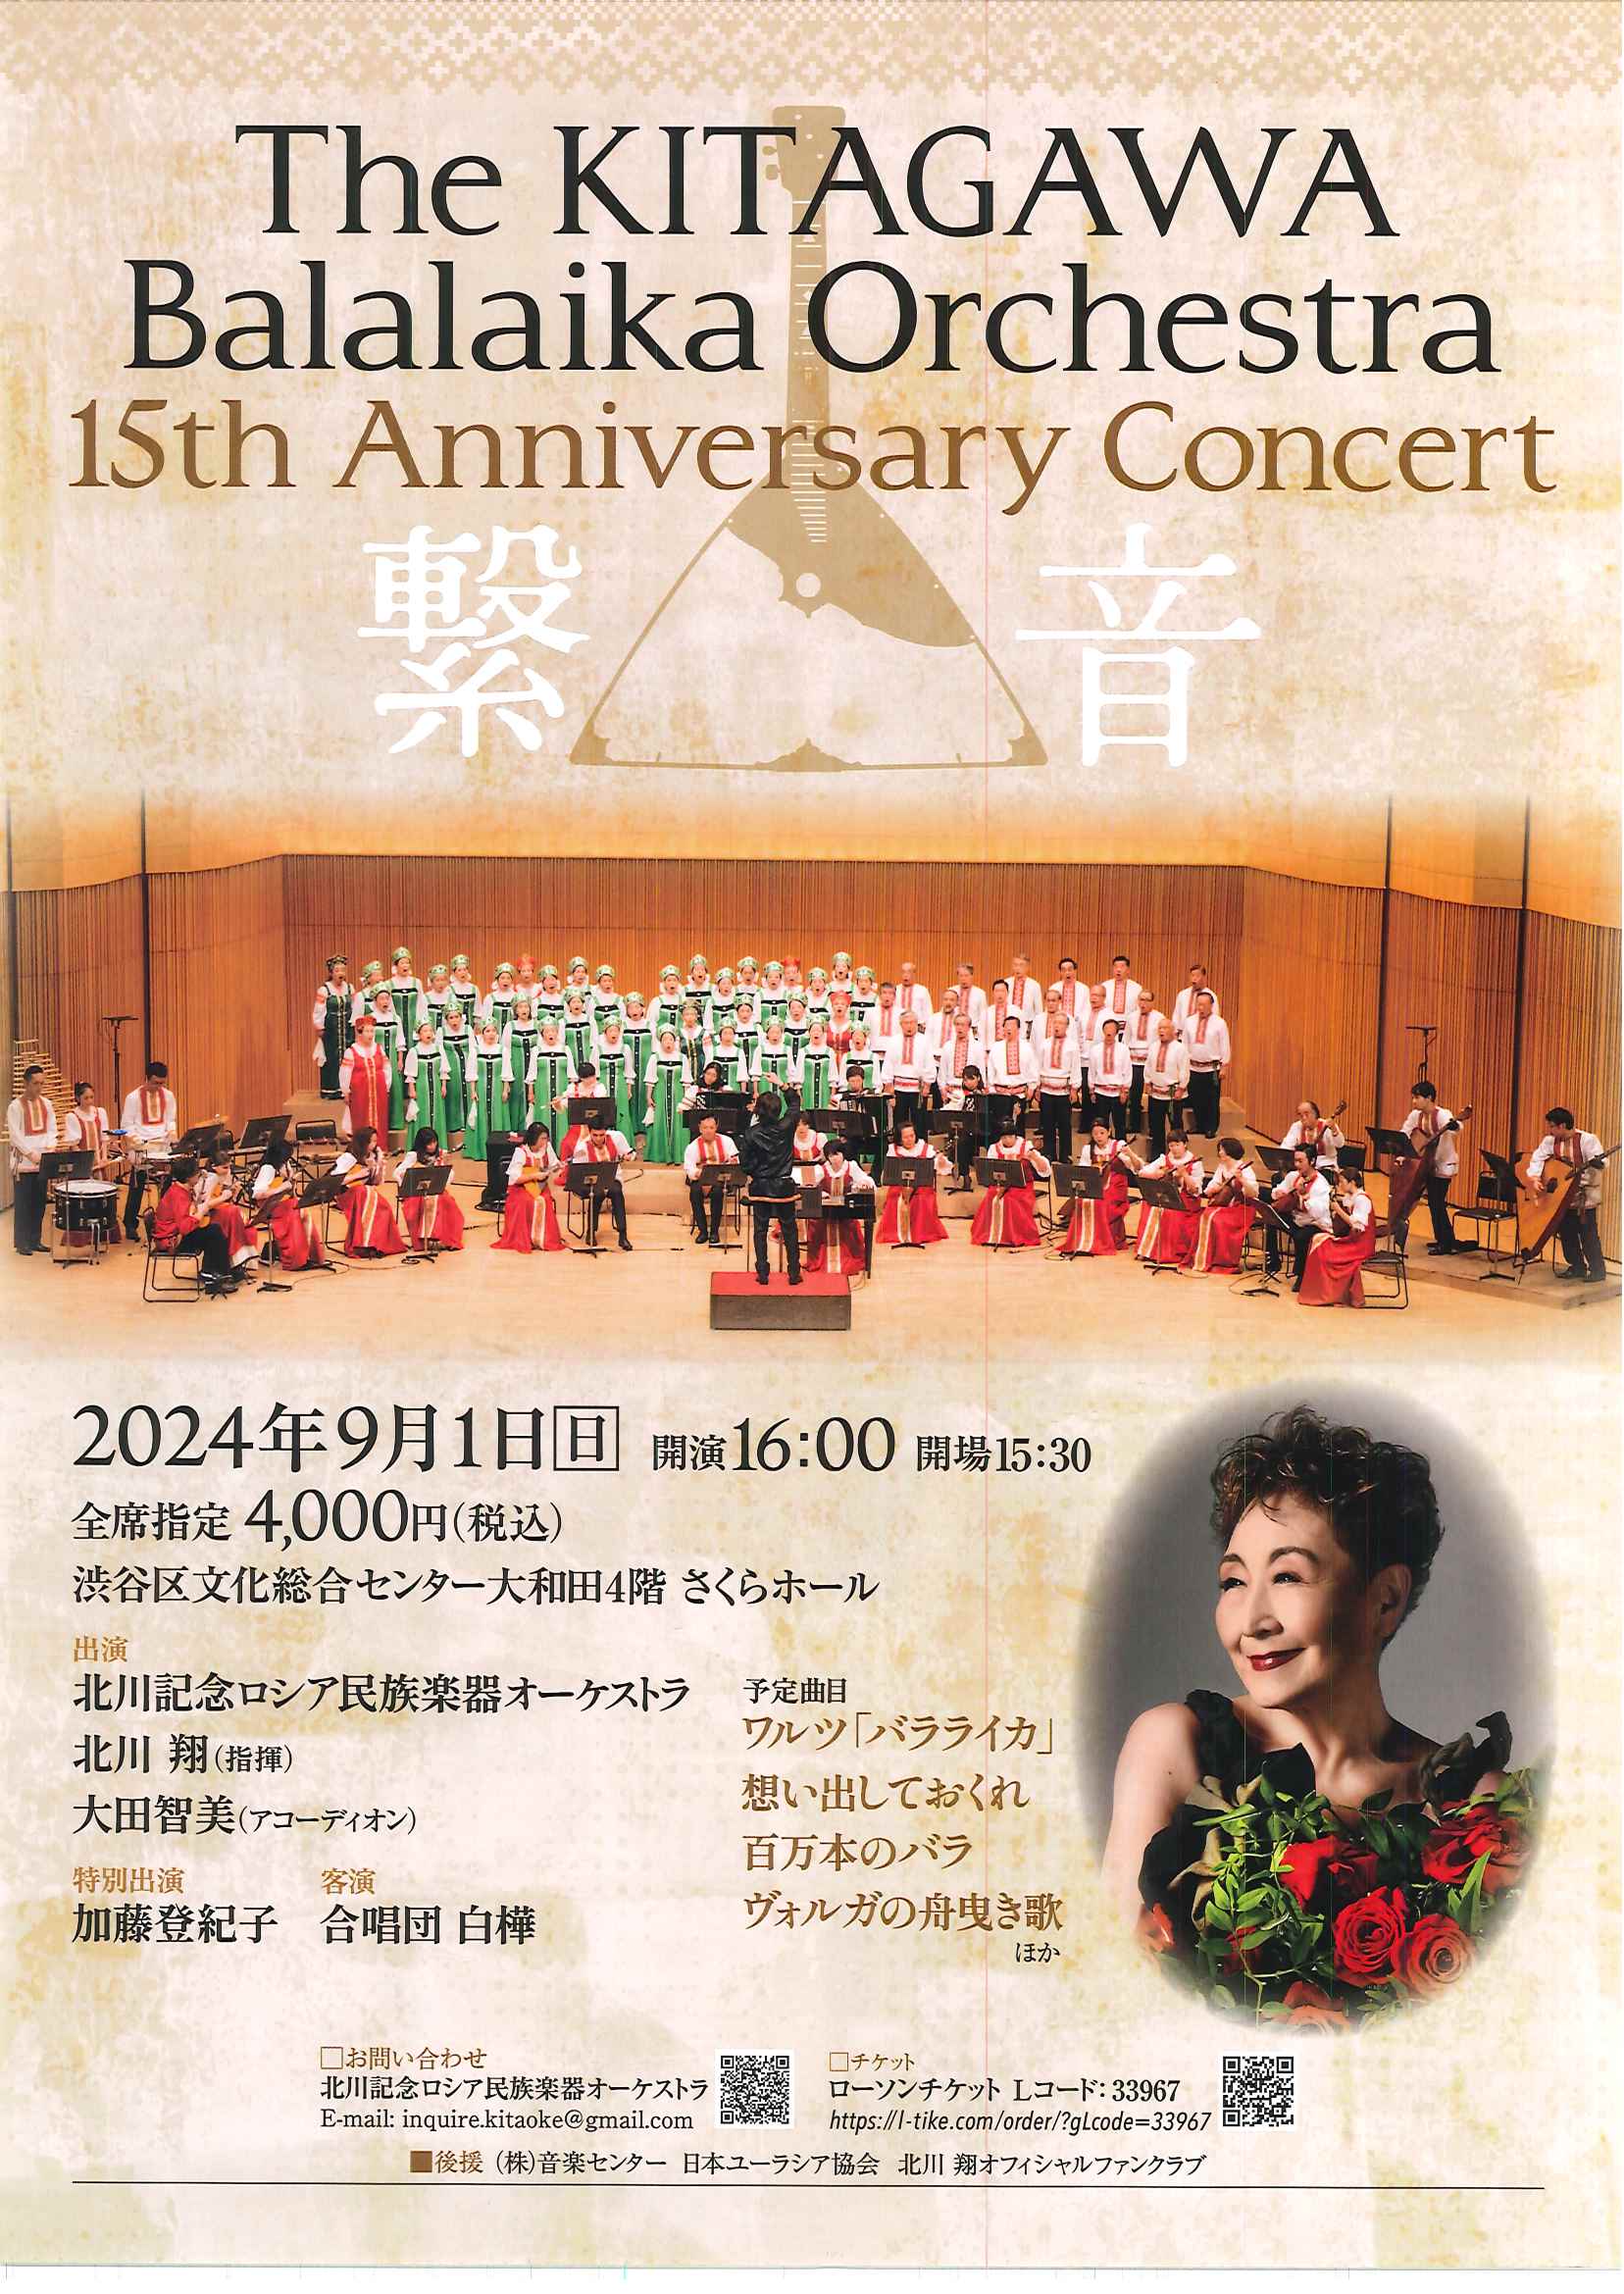 9/1 The KITAGAWA Balalaika Orchestra 15th Anniversary Concert 繋音